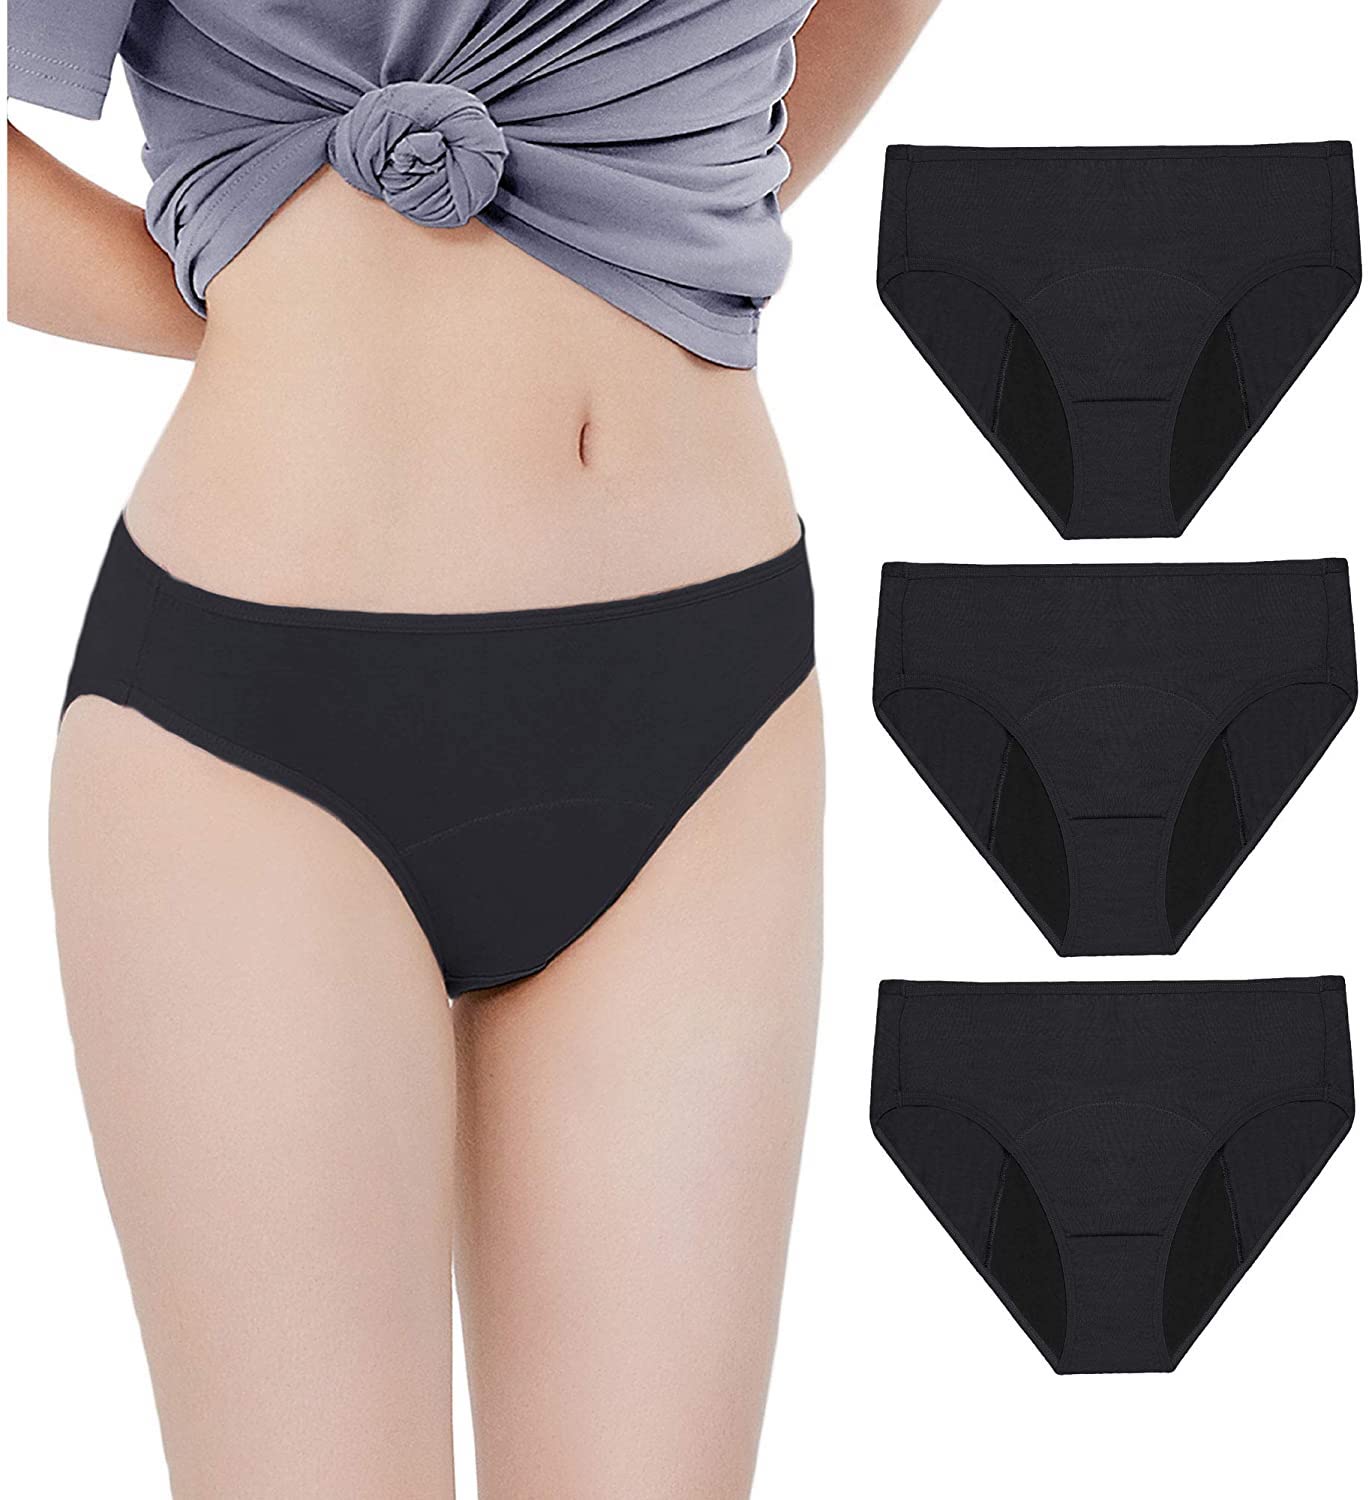 Amazono period underwear